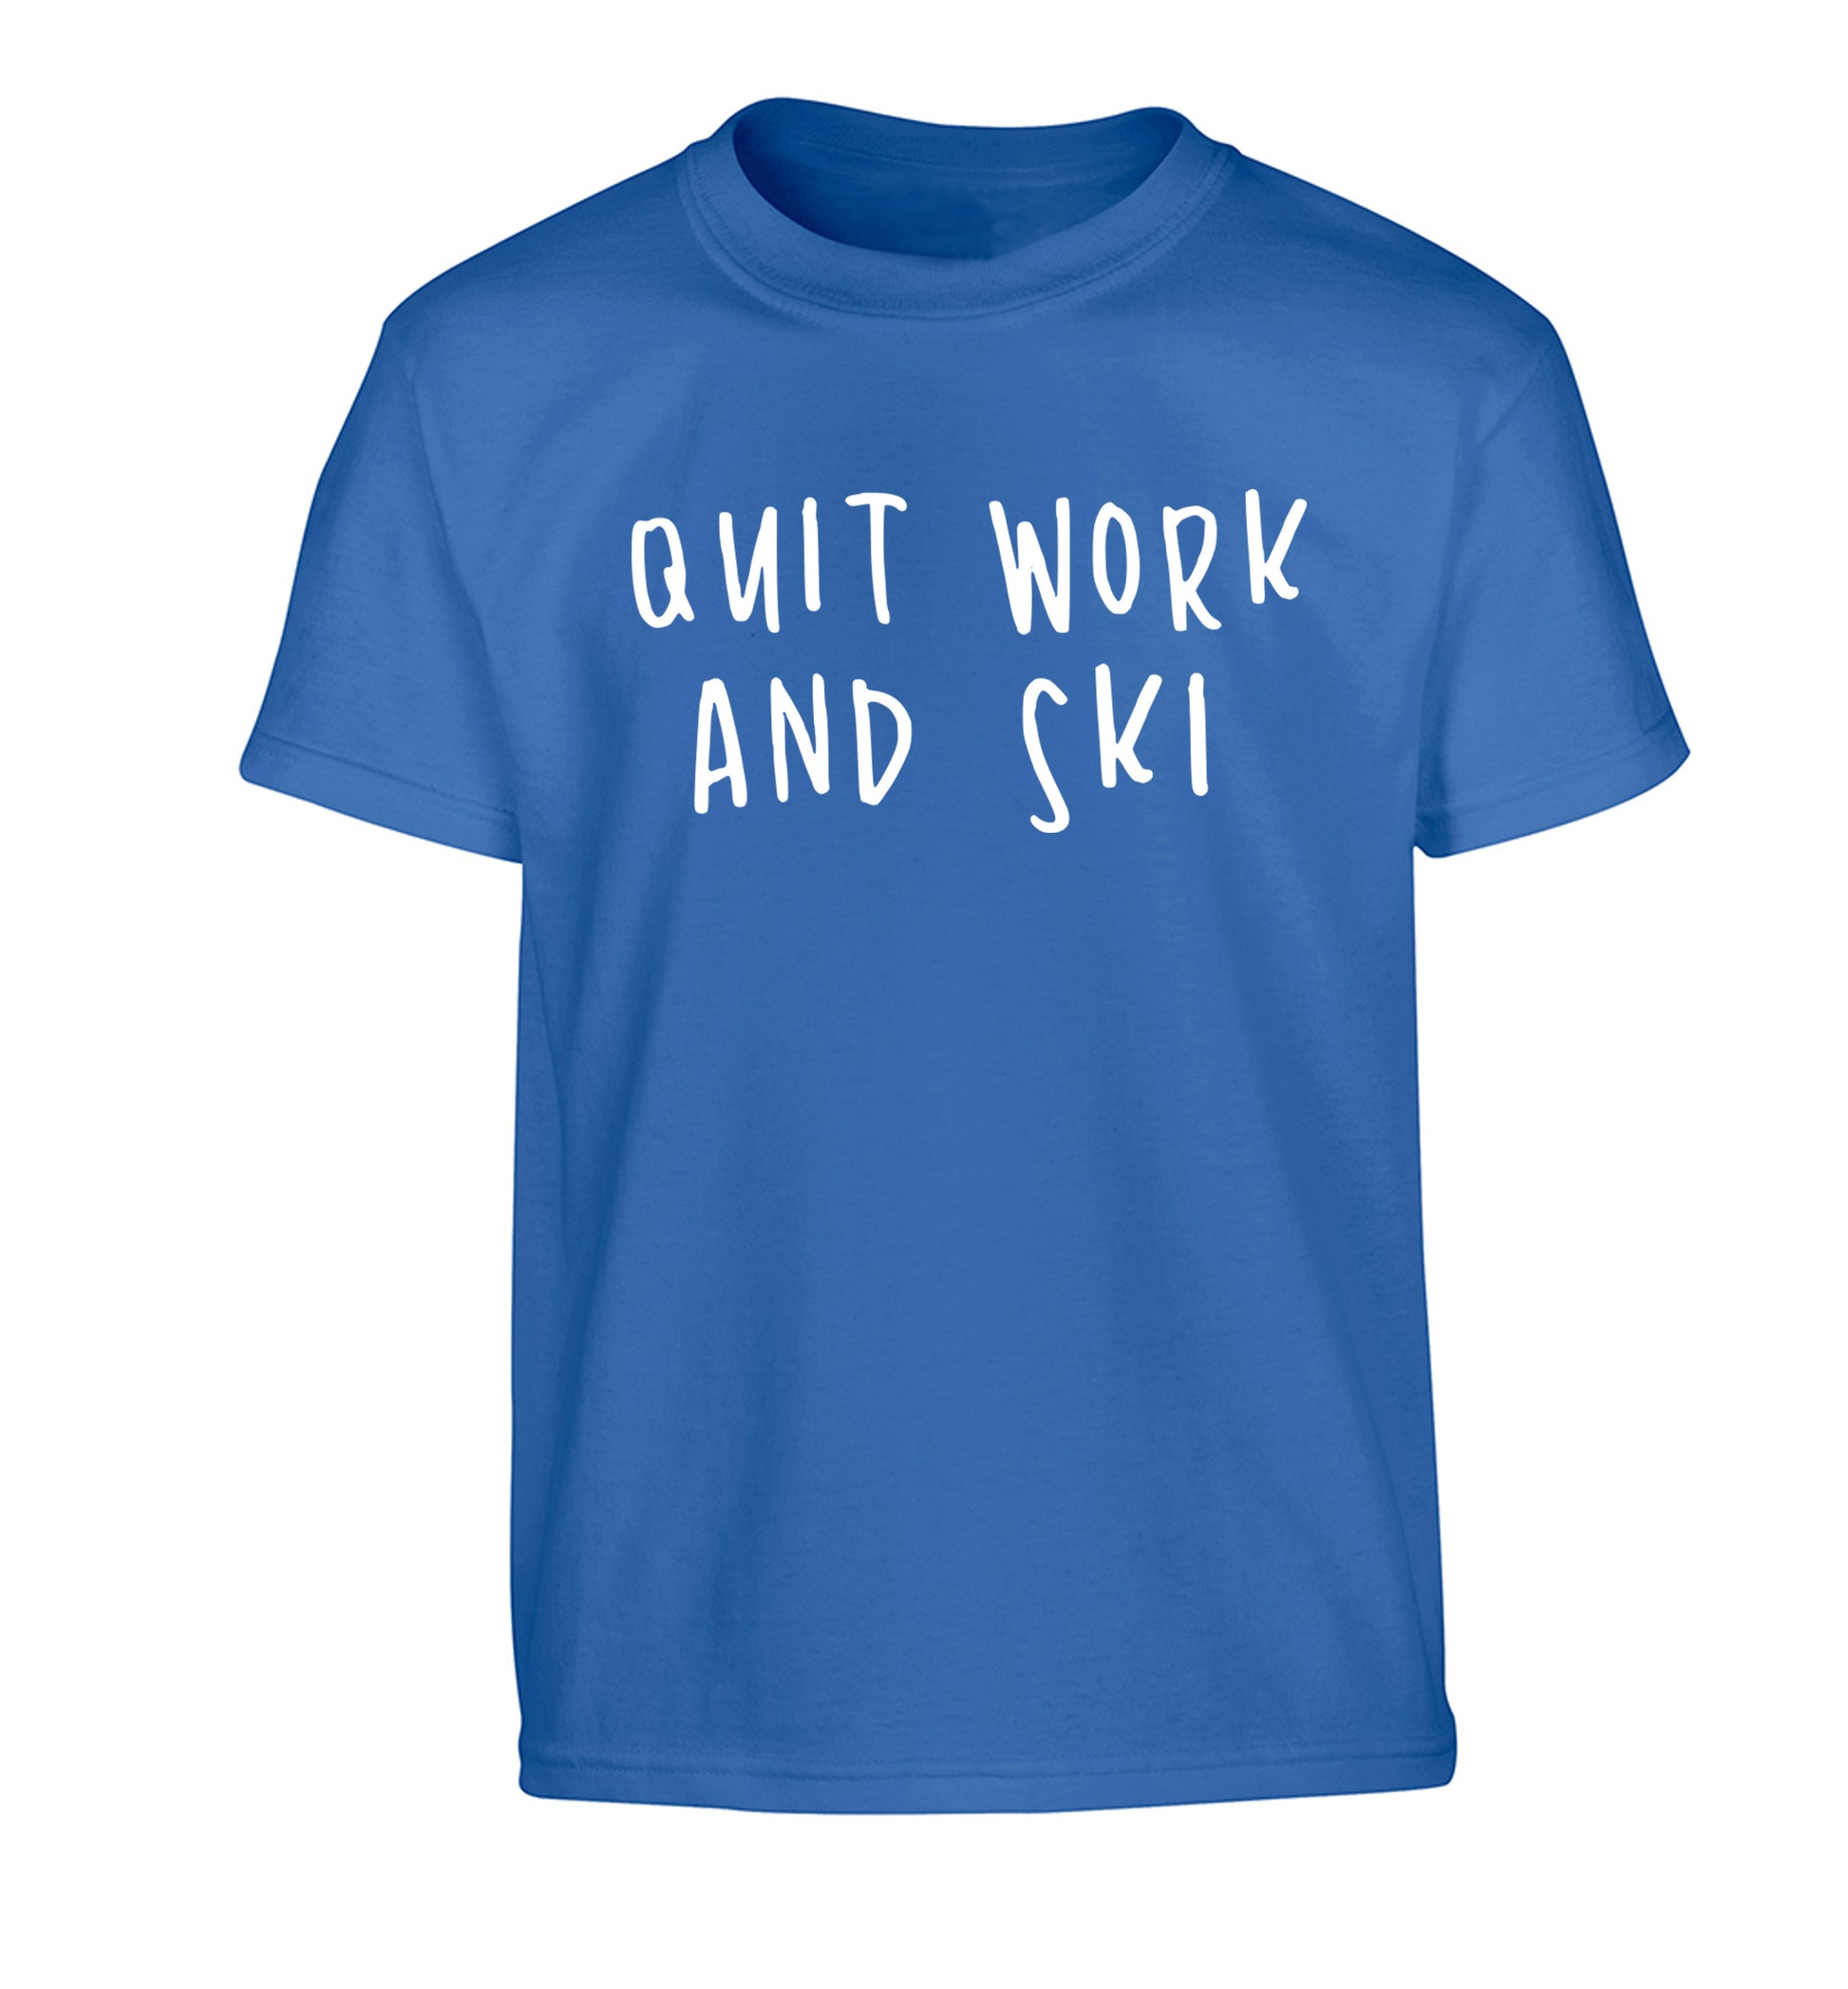 Quit work and ski Children's blue Tshirt 12-14 Years